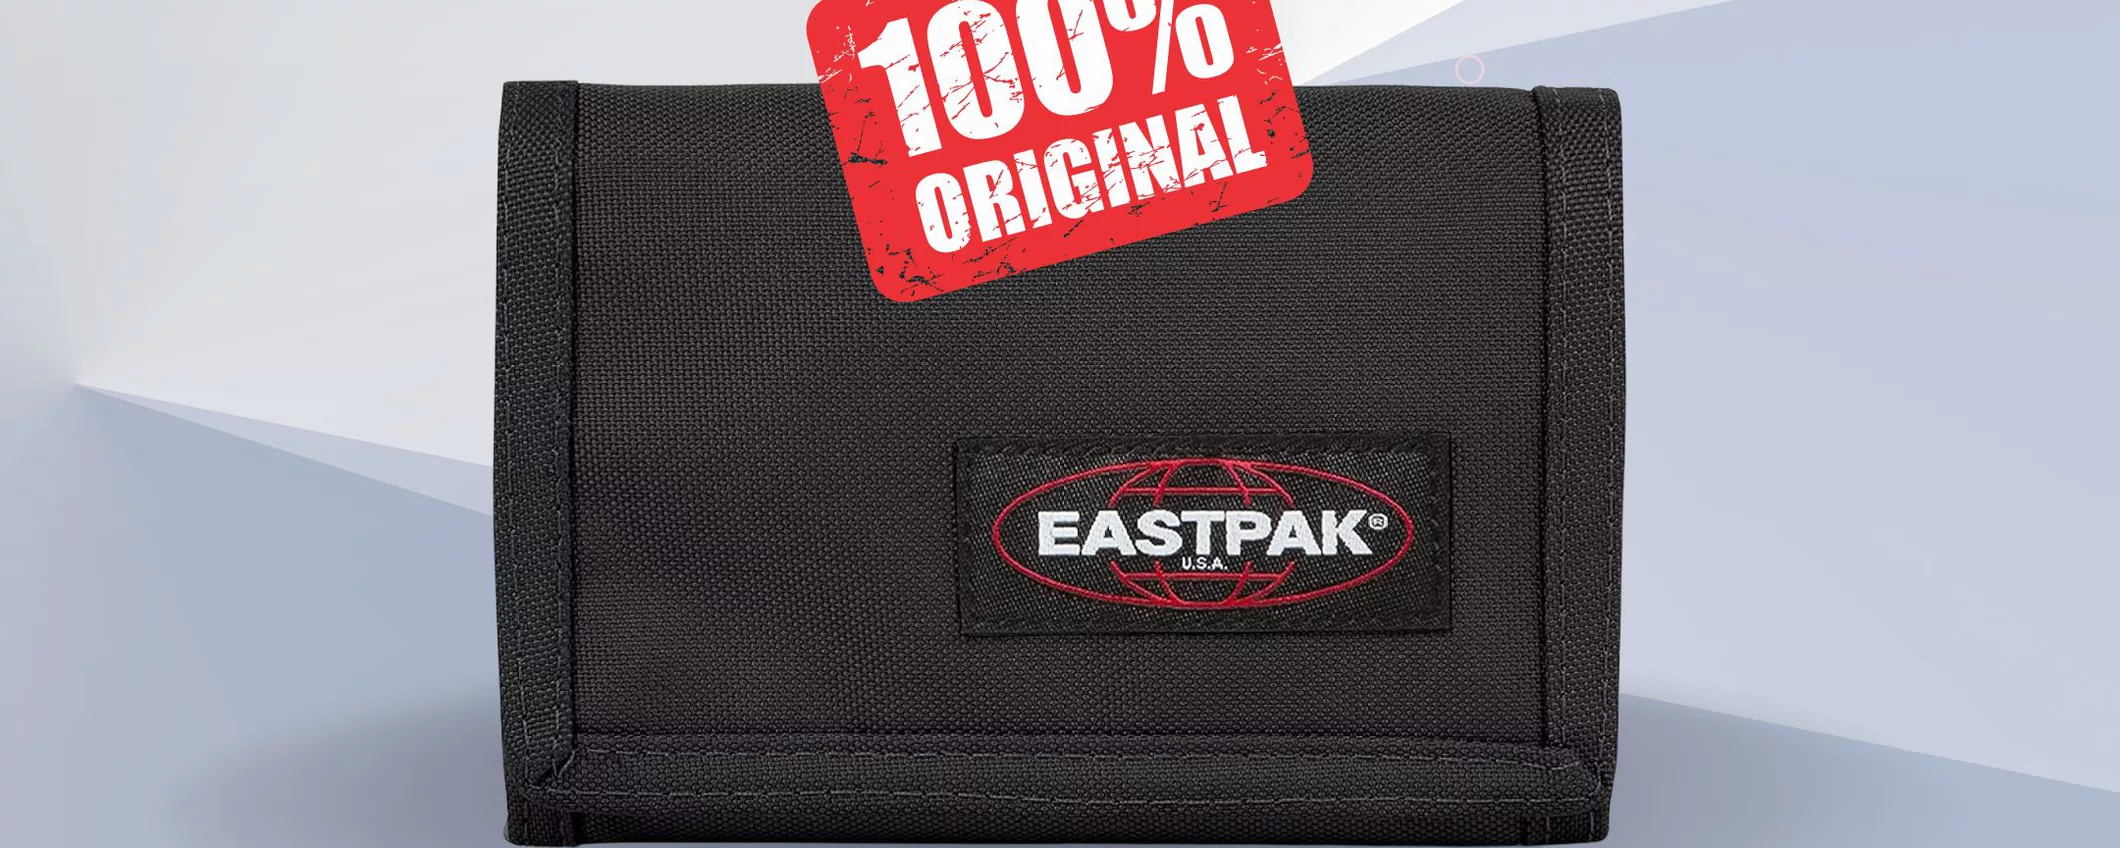 SOLO 19€ per il portafoglio Easpak originale 100%: scoprilo su Amazon